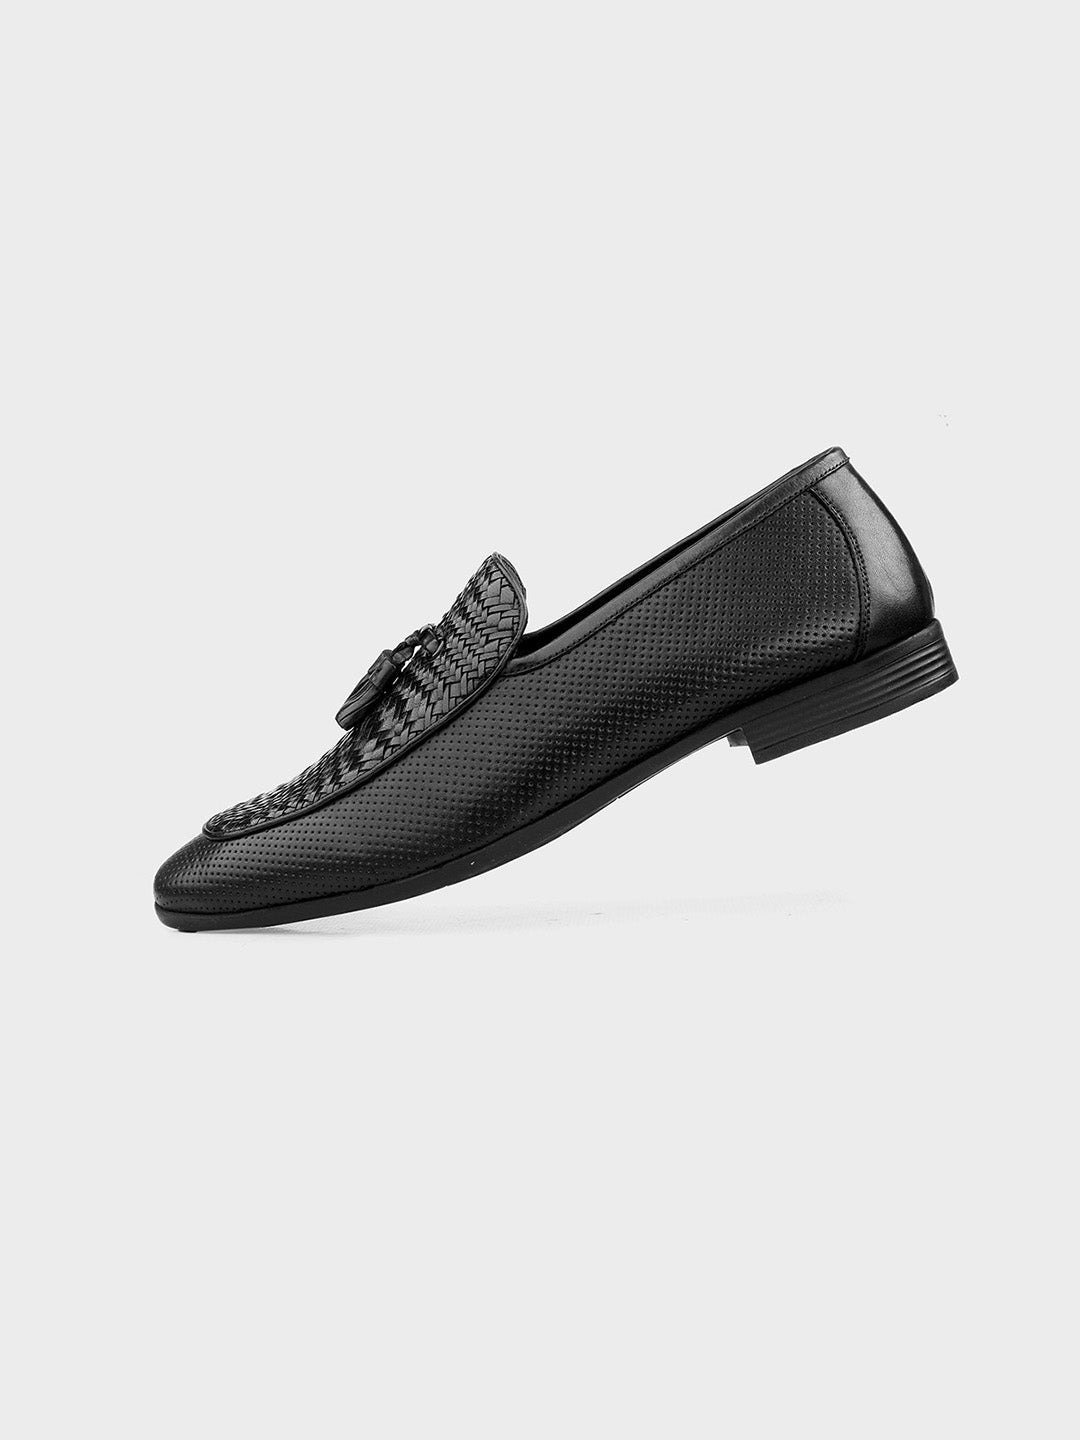 Men's Classic Black Leather Slip-On Tassel Shoes